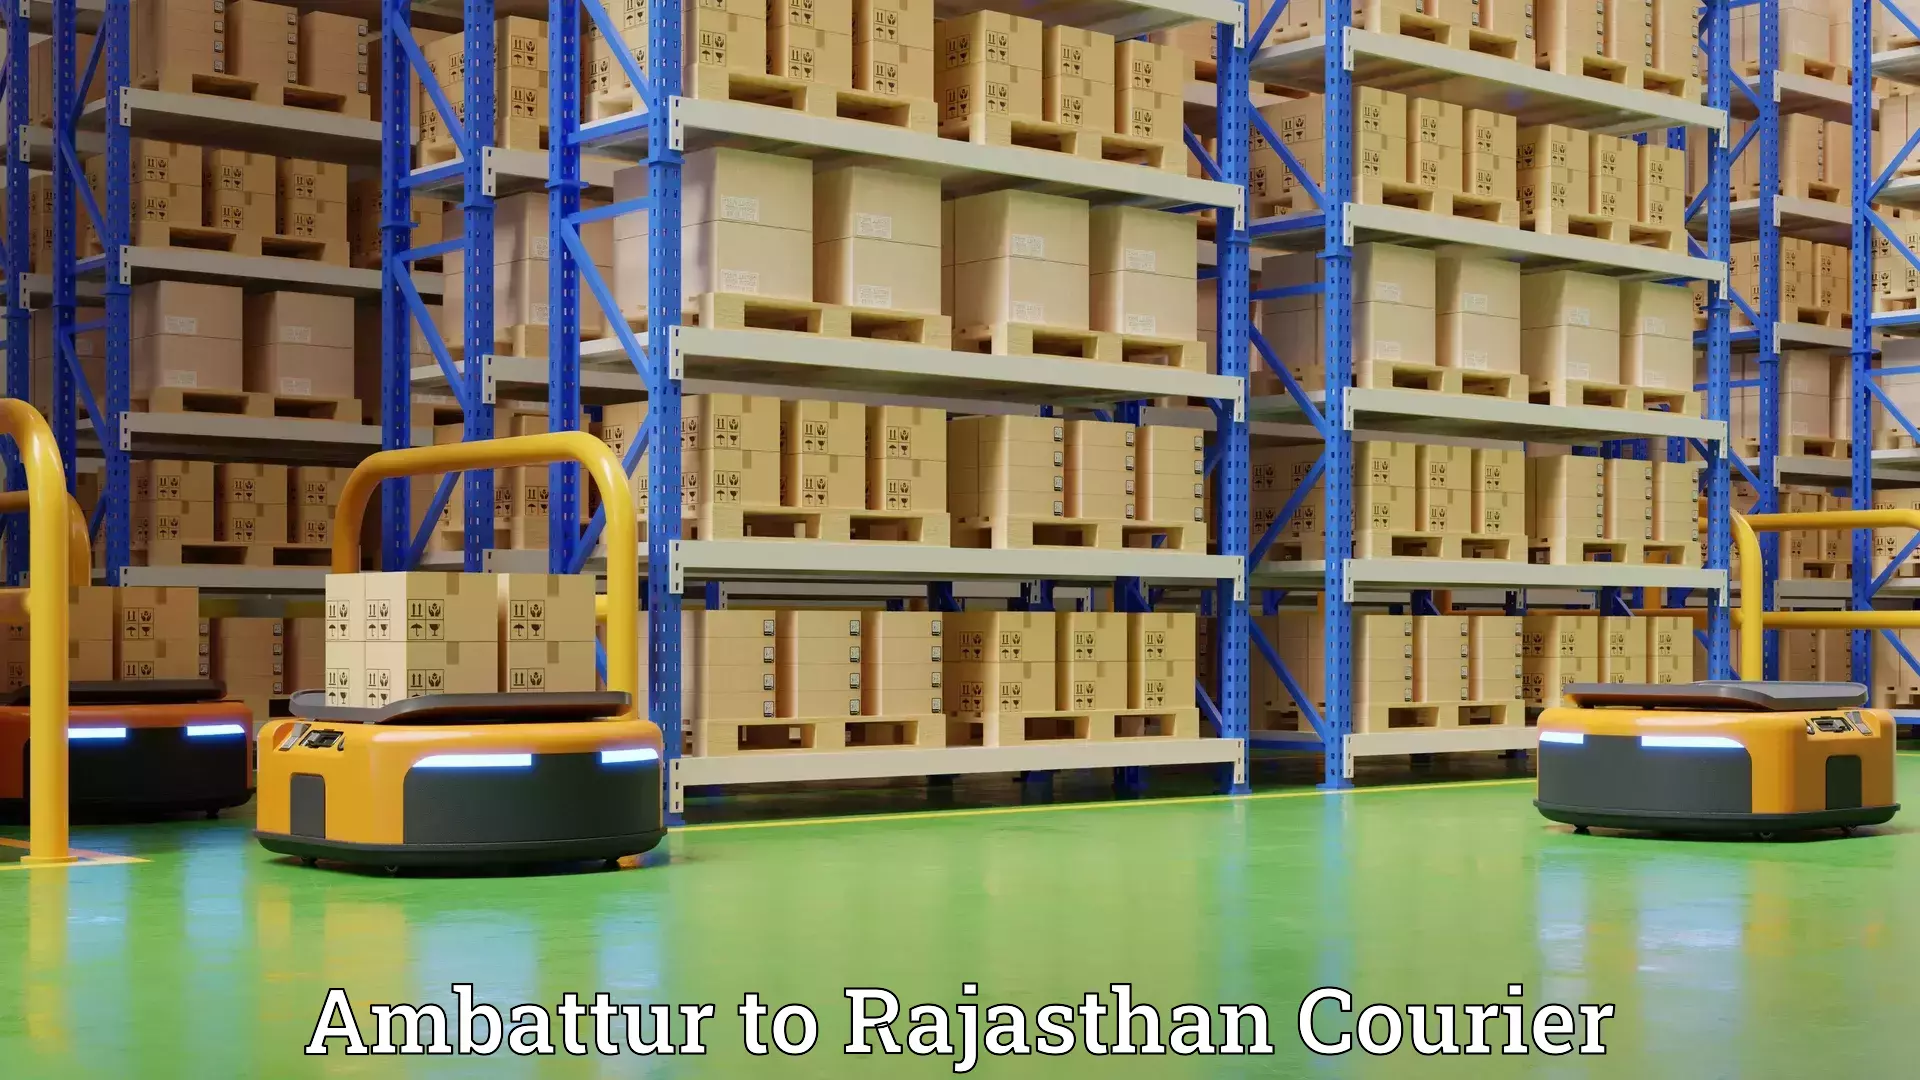 Nationwide furniture transport Ambattur to Rajasthan